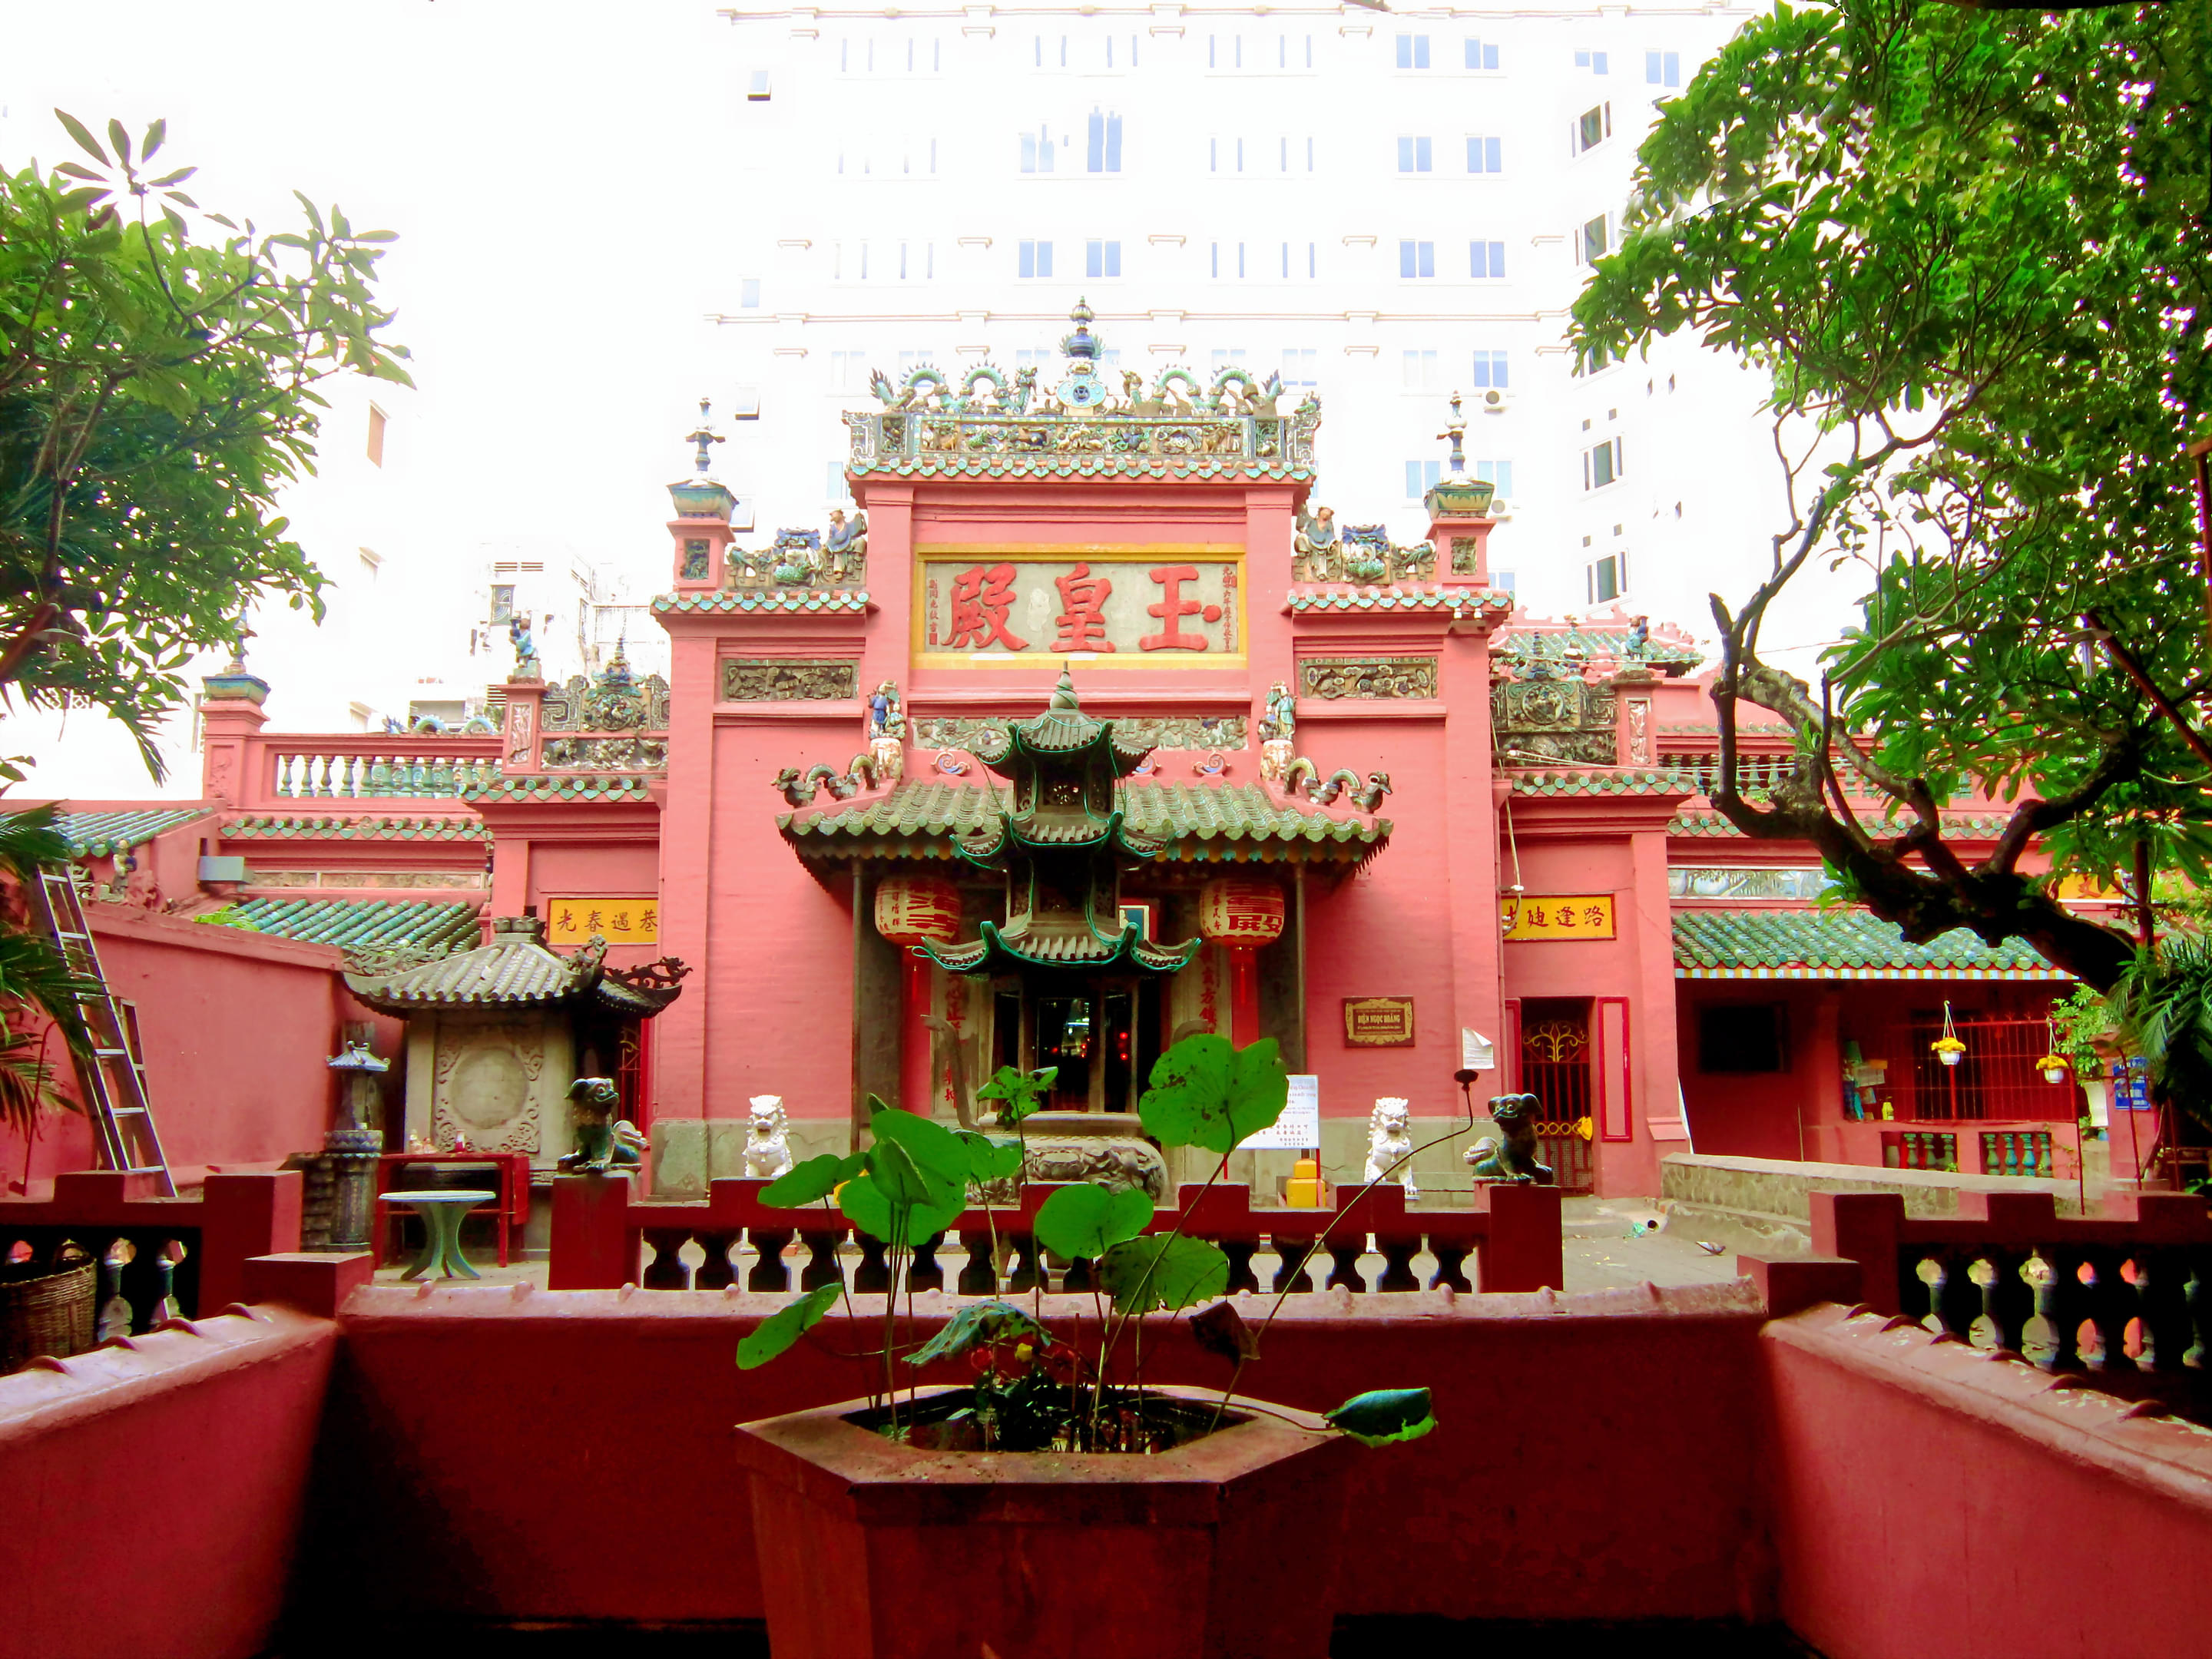 Jade Emperor Pagoda Overview